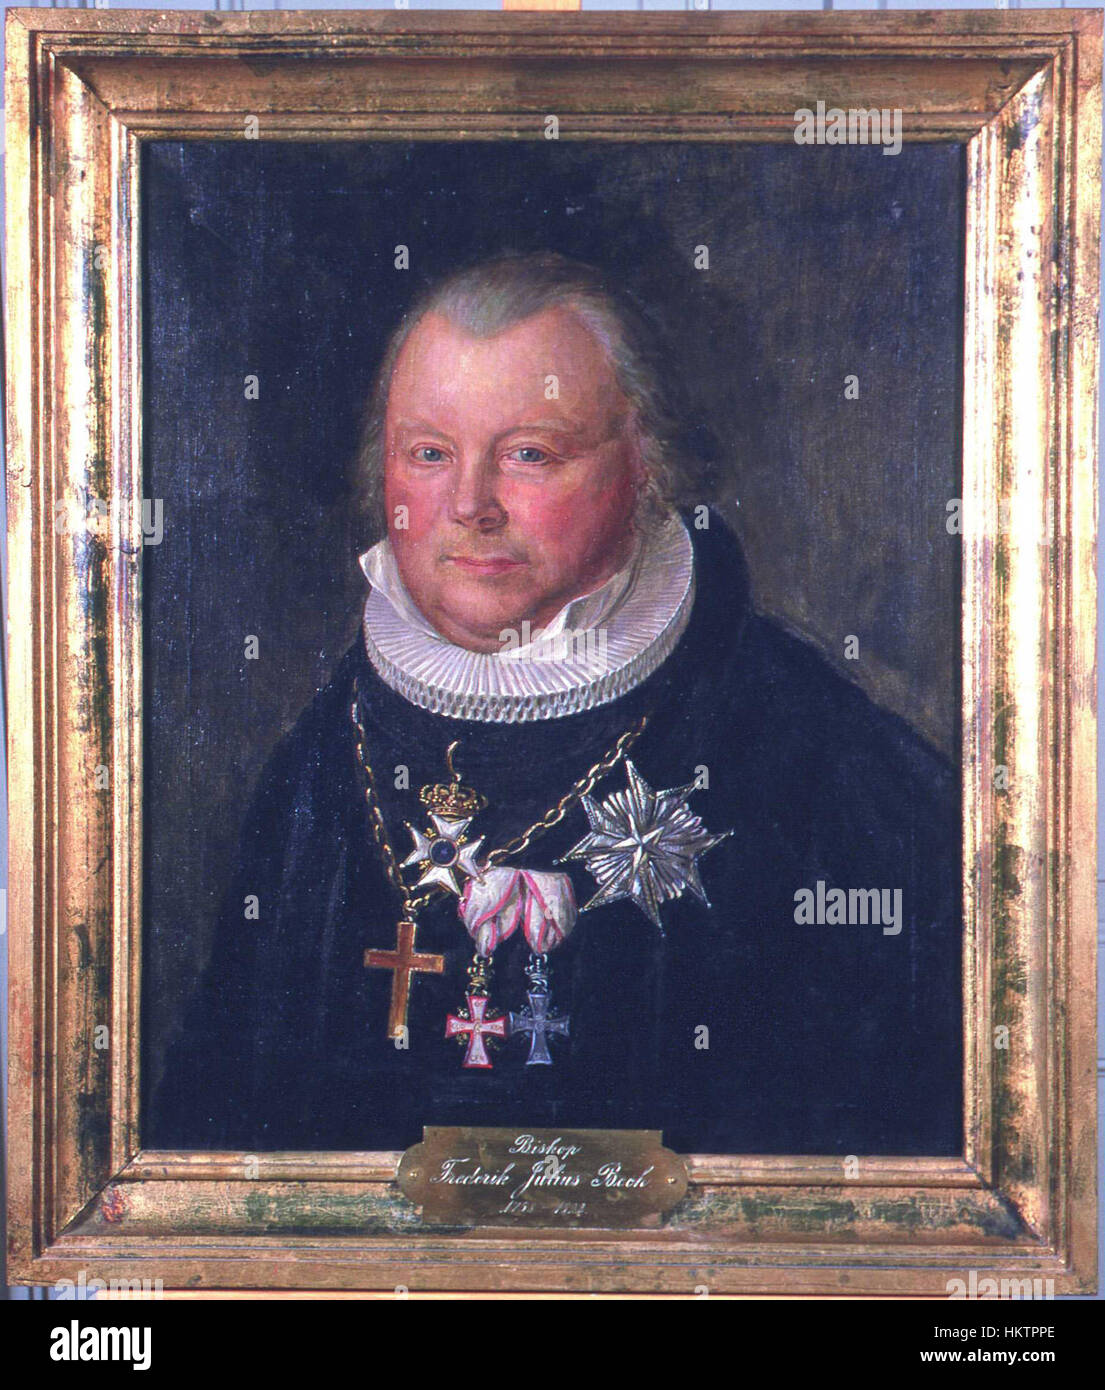 Frederik Julius Bech av August Eiebakke, Eidsvoll 1814, EM.00682 Stock Photo